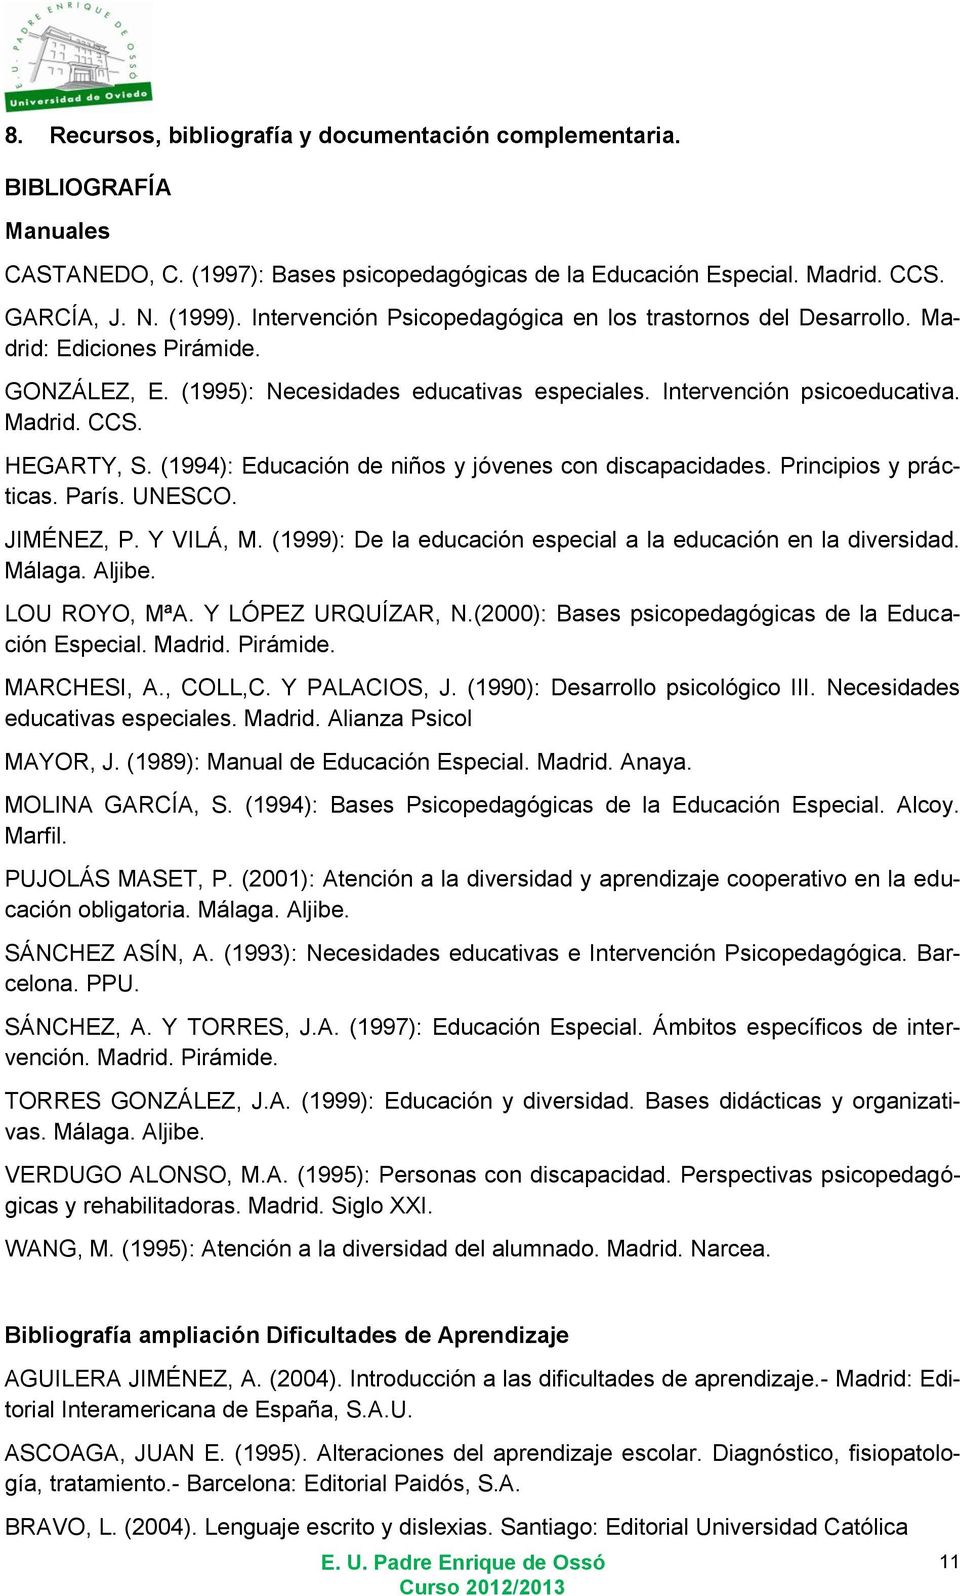 (1994): Educación de niños y jóvenes con discapacidades. Principios y prácticas. París. UNESCO. JIMÉNEZ, P. Y VILÁ, M. (1999): De la educación especial a la educación en la diversidad. Málaga. Aljibe.